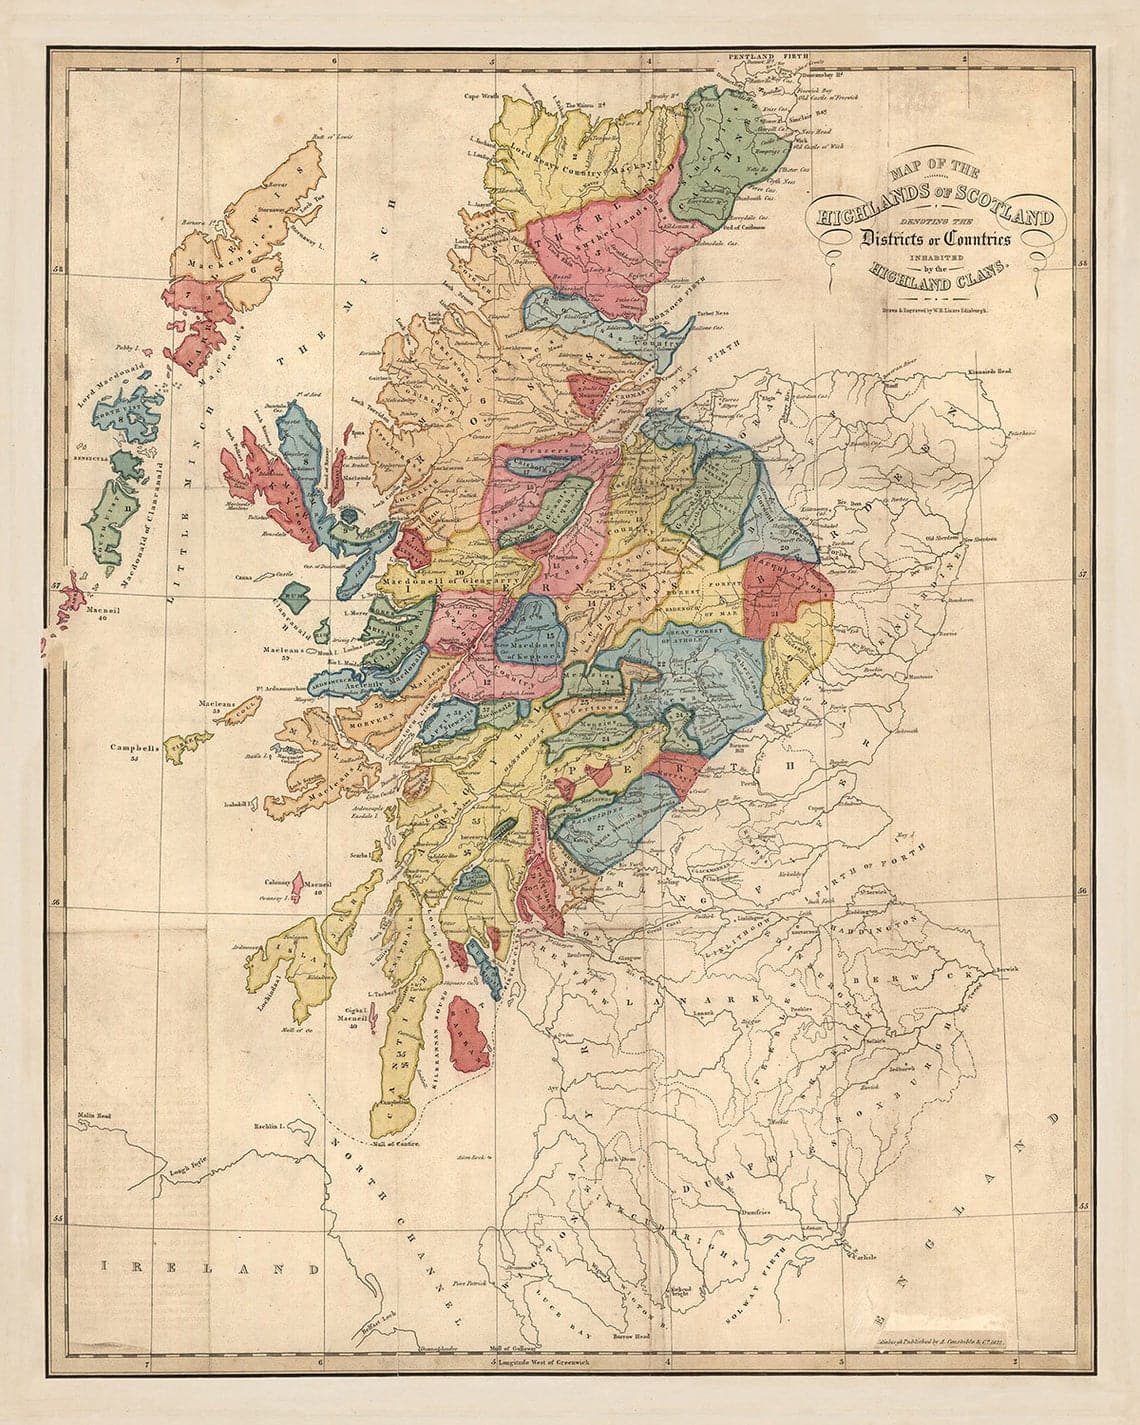 Schottland Clan-Karte - Seltene Farbkarte der Highlands von Schottland von WH Lizars, 1822